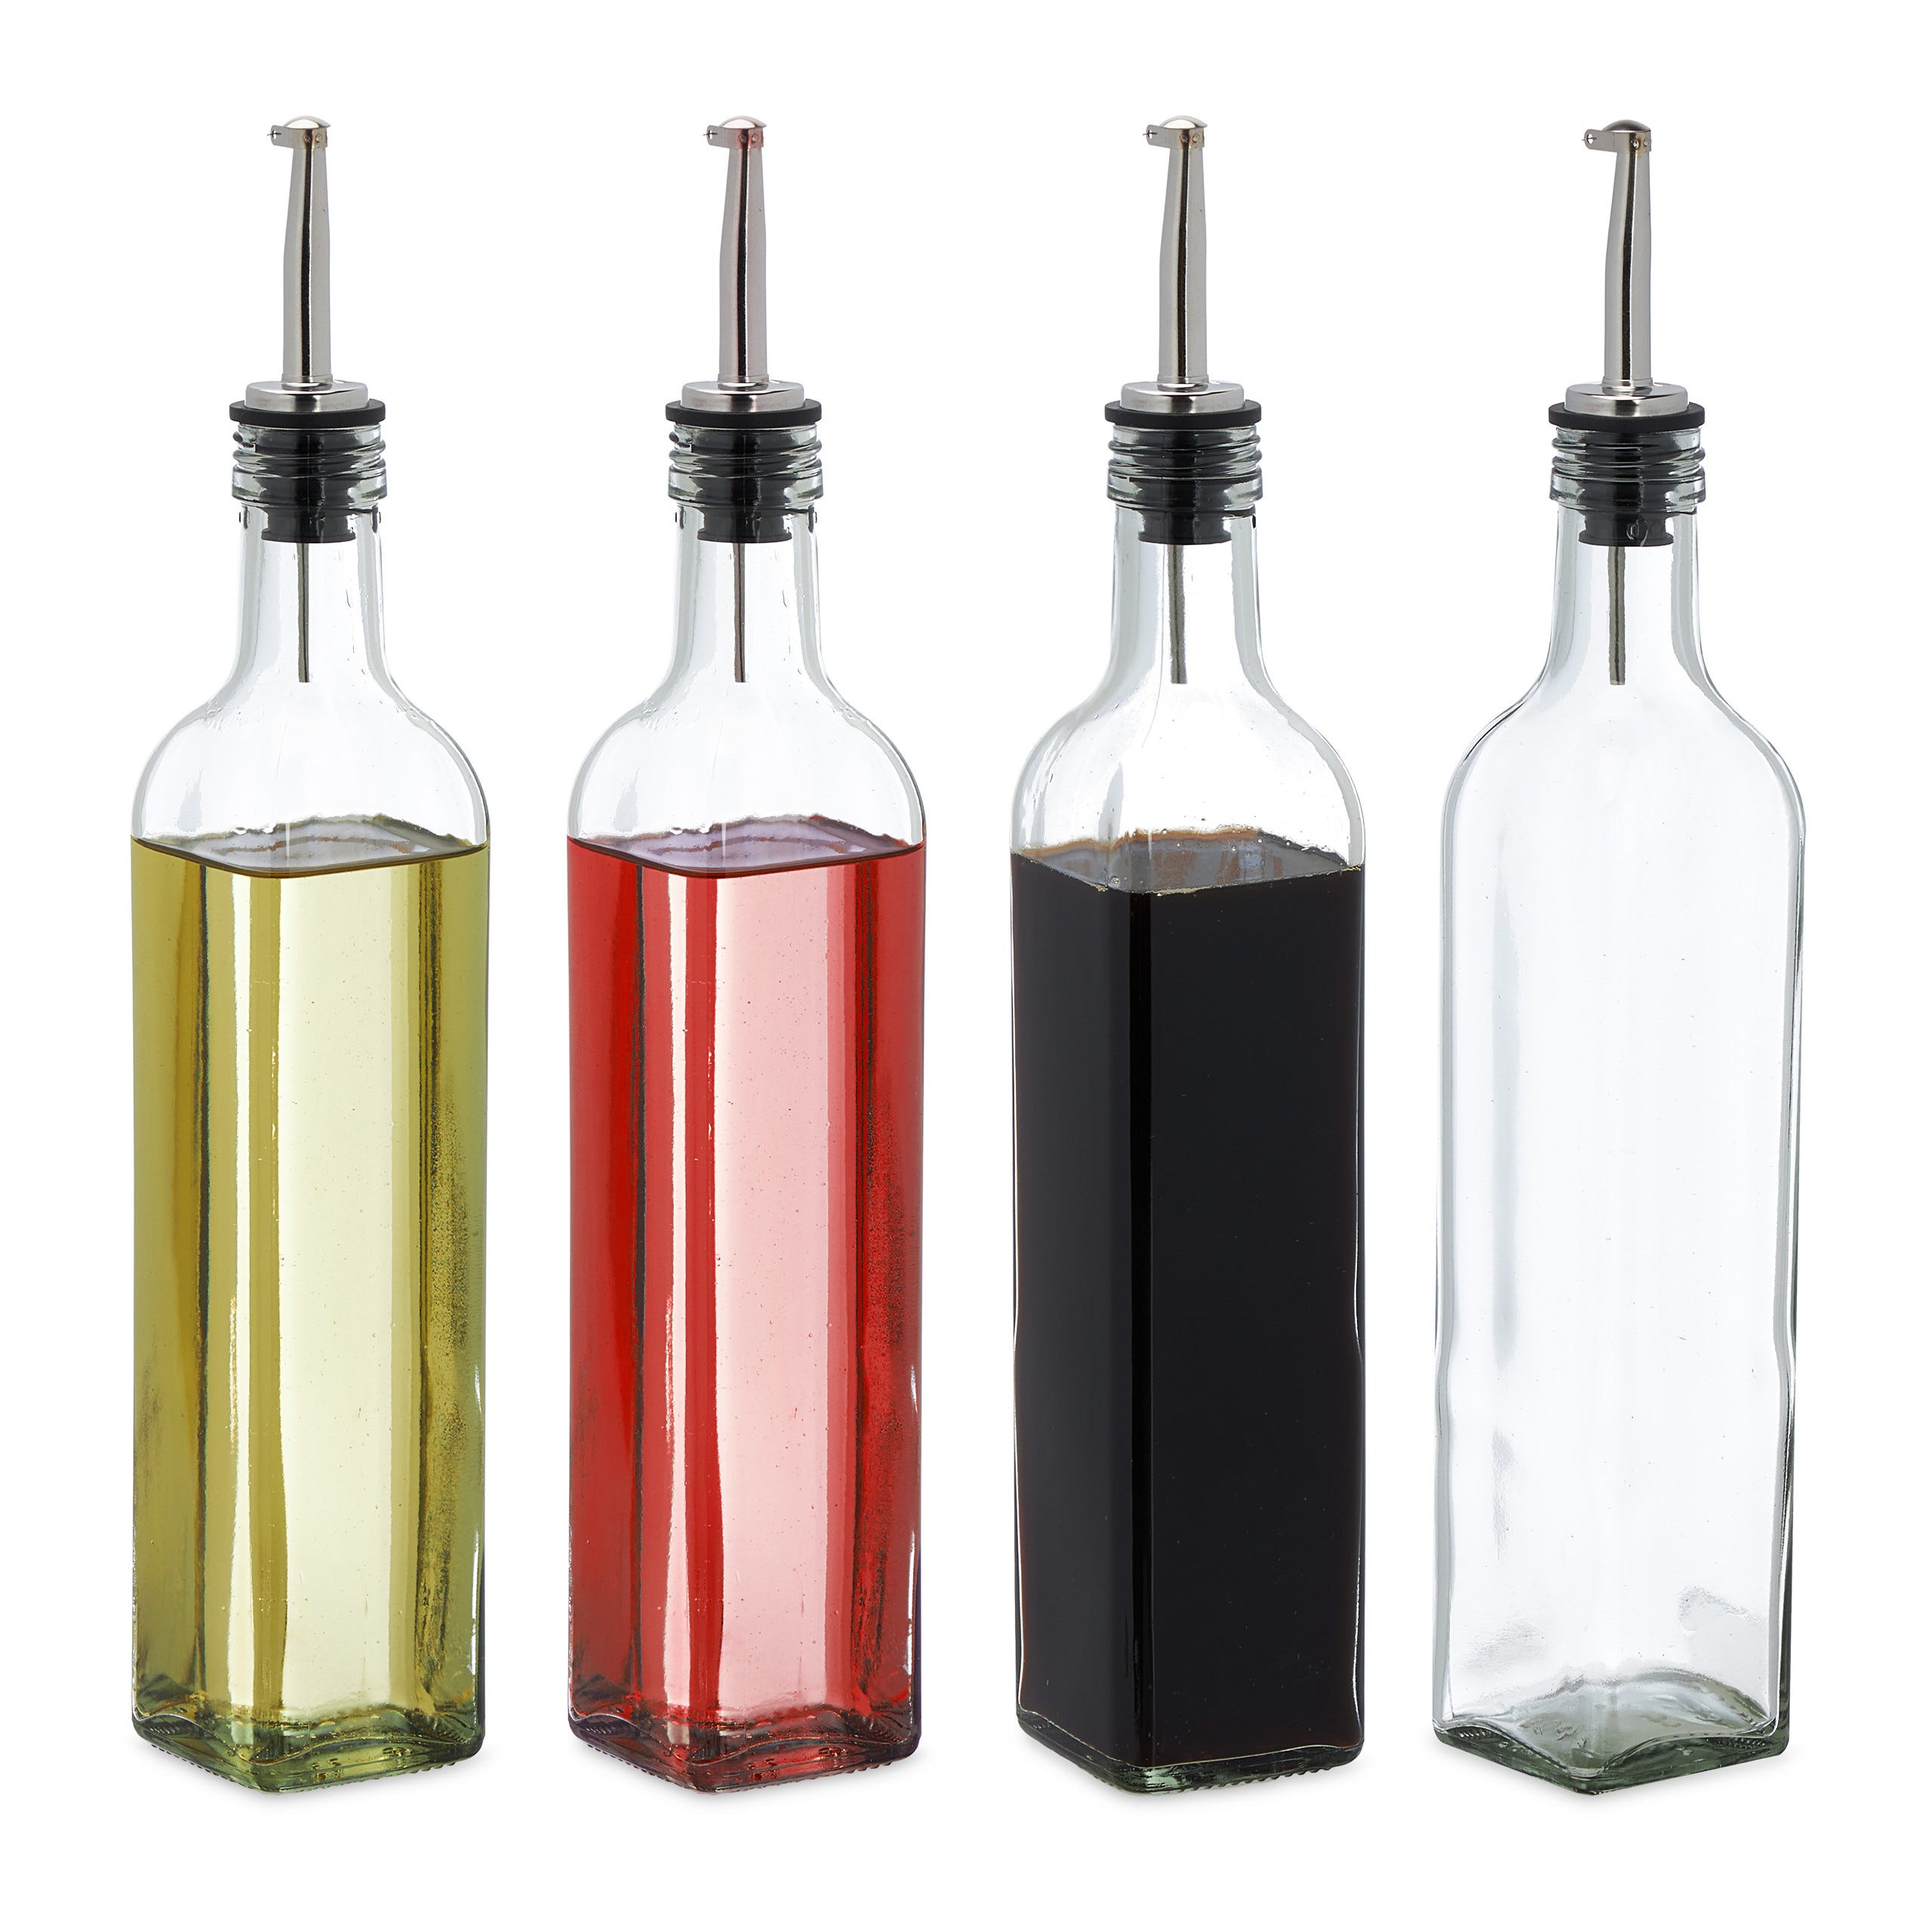 Bouteille d'huile, bouteille d'huile et de vinaigre 500 ml/17 oz, verre  carré haut avec 2 becs en acier inoxydable, 2 étiquettes et 1 entonnoir  pour remplir facilement les réservoirs d'huile, bouteilles d'huile